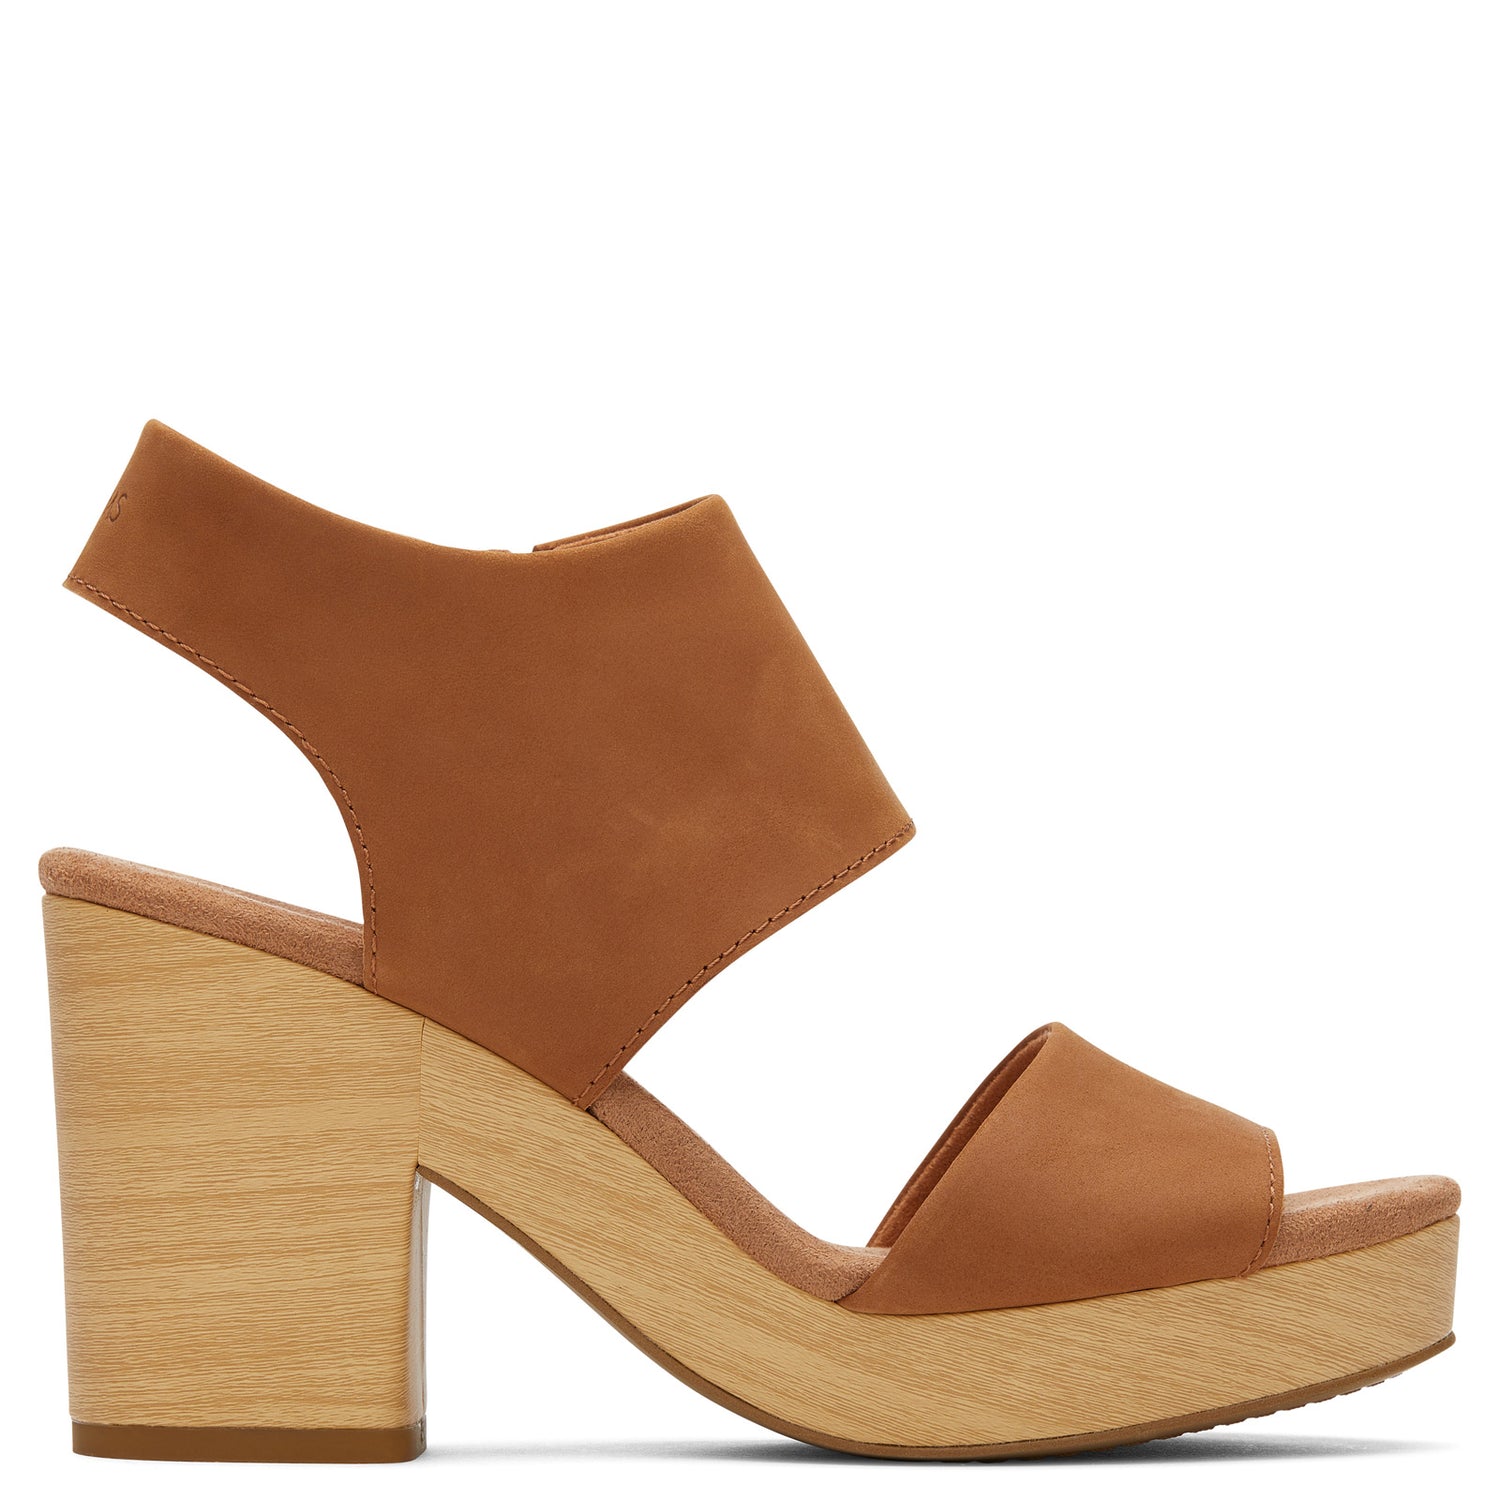 Peltz Shoes  Women's Toms Majorca Platform Sandal TAN LEATHER 10019708